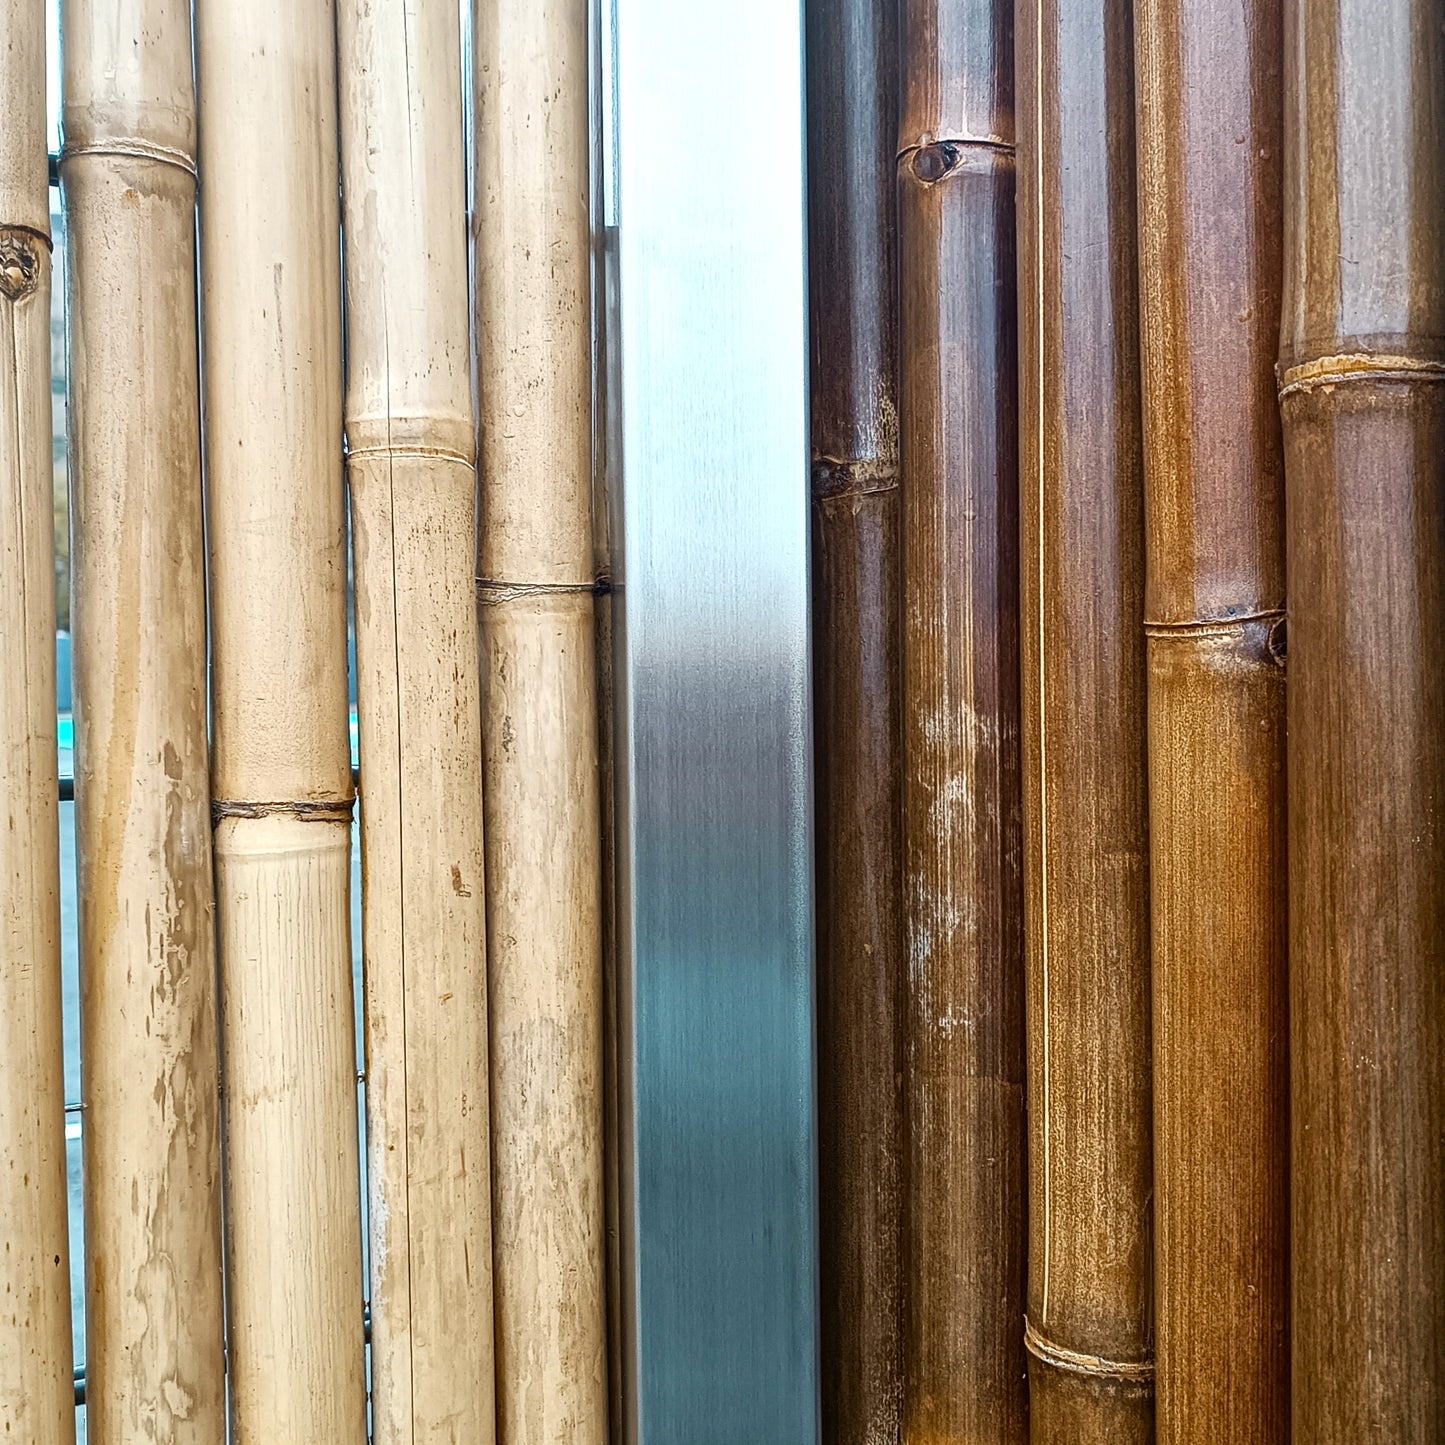 Vergleich zwischen hellem und dunklem Bambus in Kombination mit Edelstahl